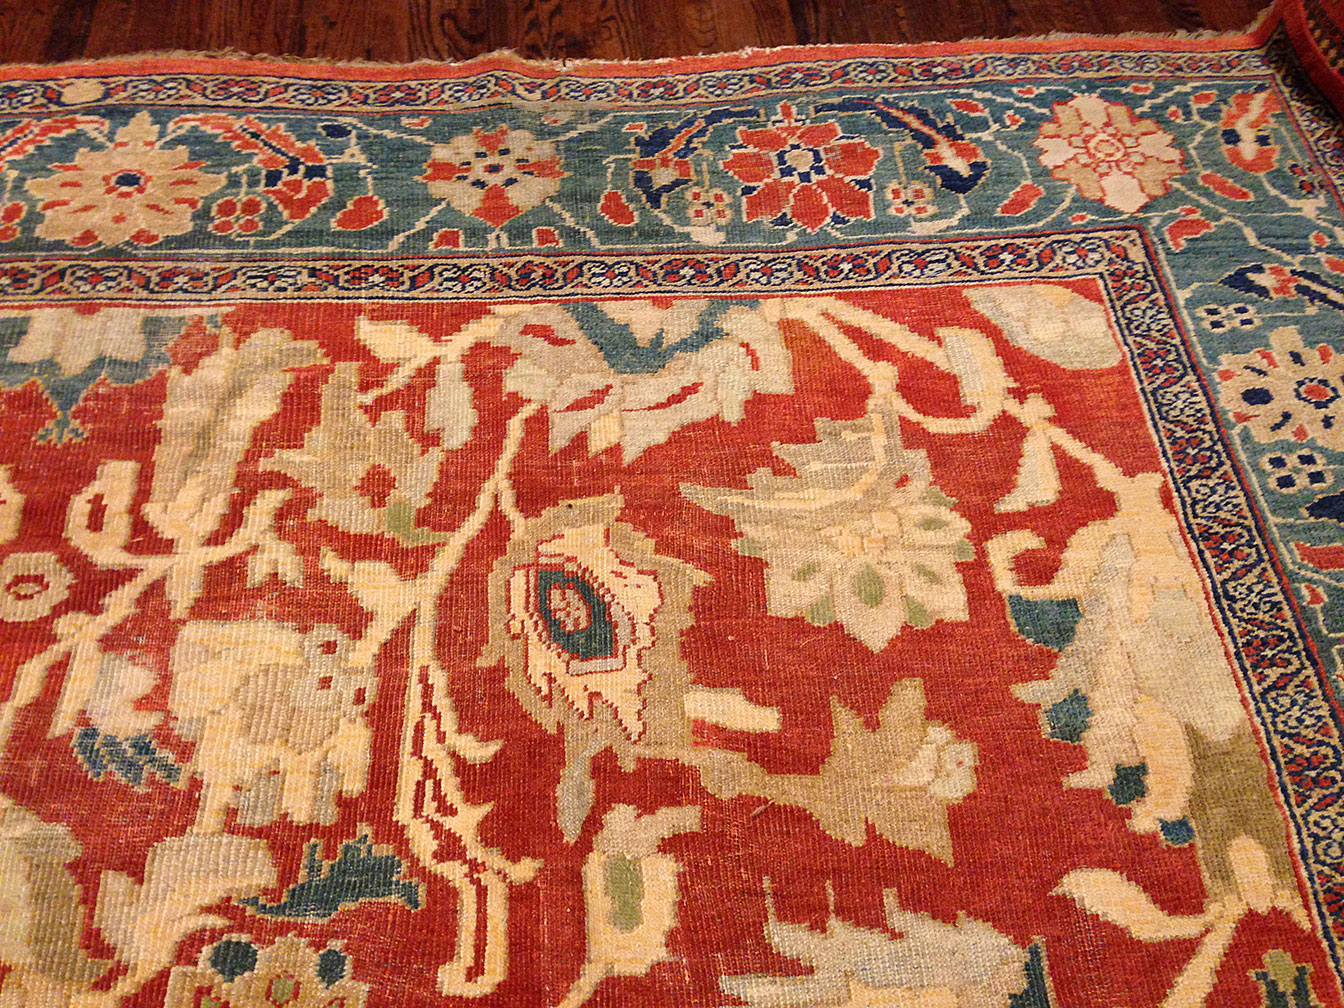 Antique sultan abad Carpet - # 50003